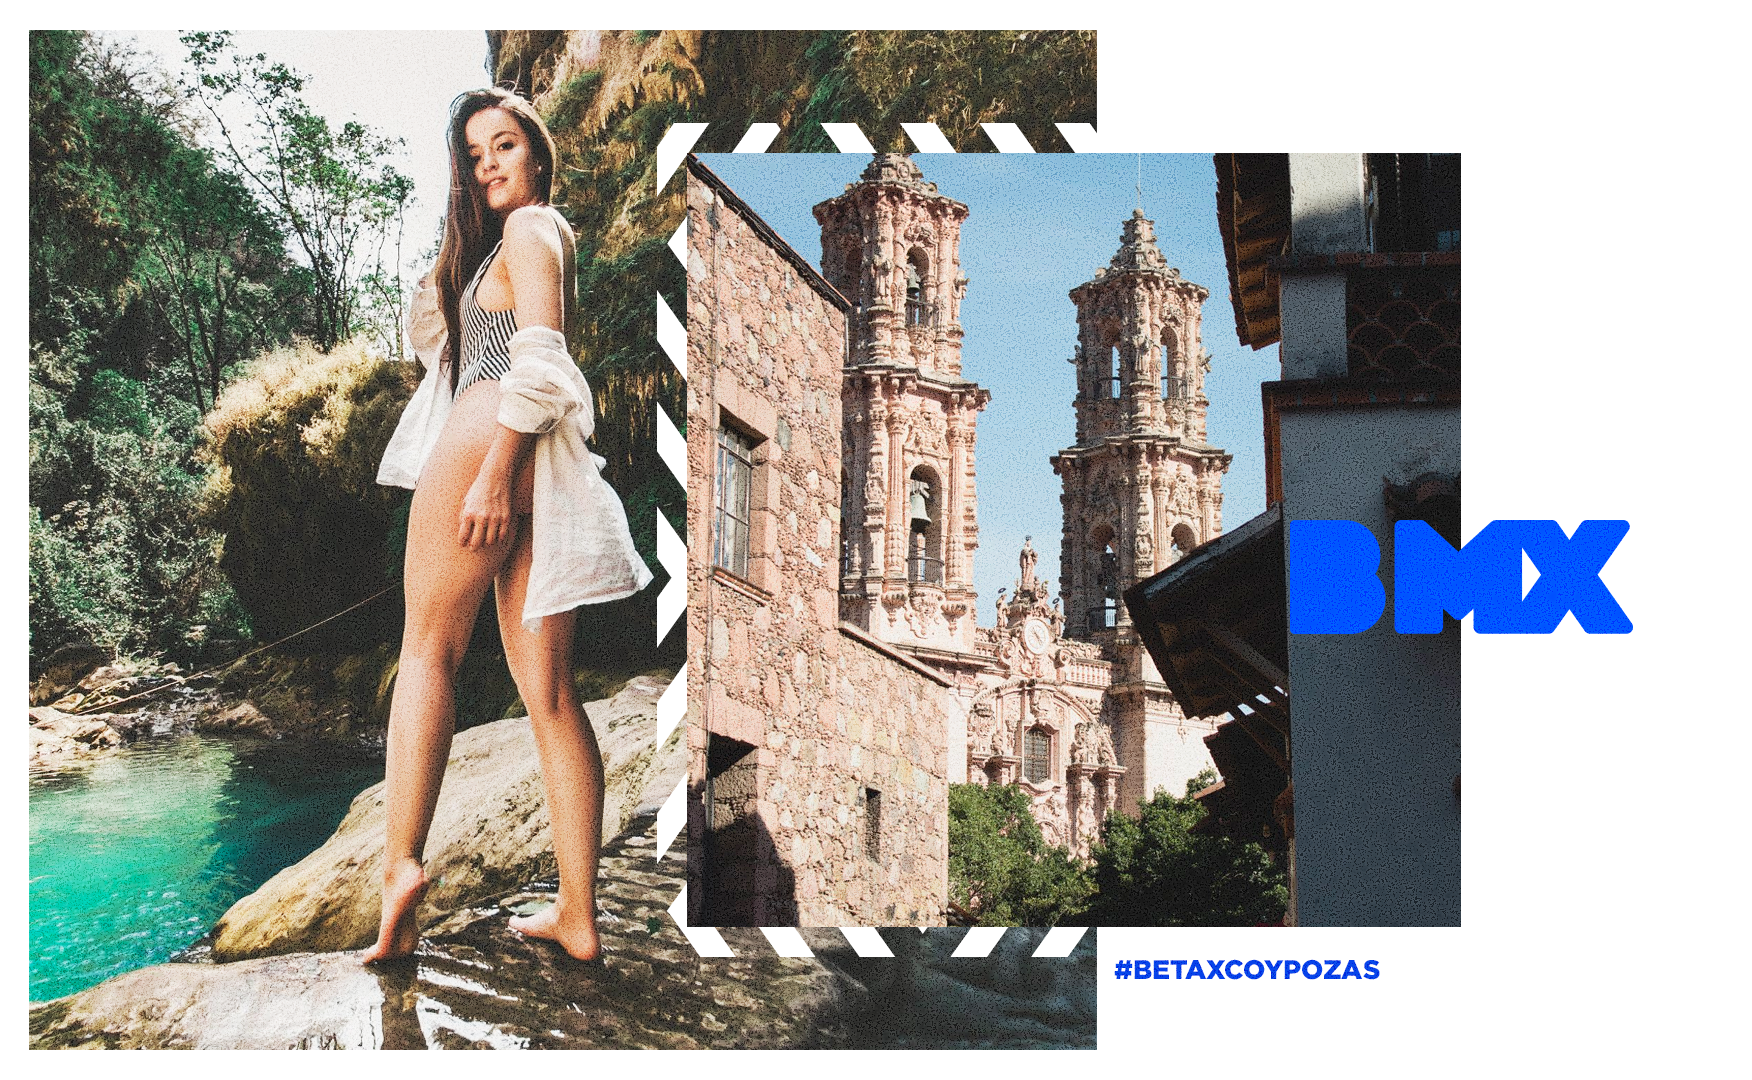 Excursión a Taxco y Cuernavaca desde Ciudad de México con Be México